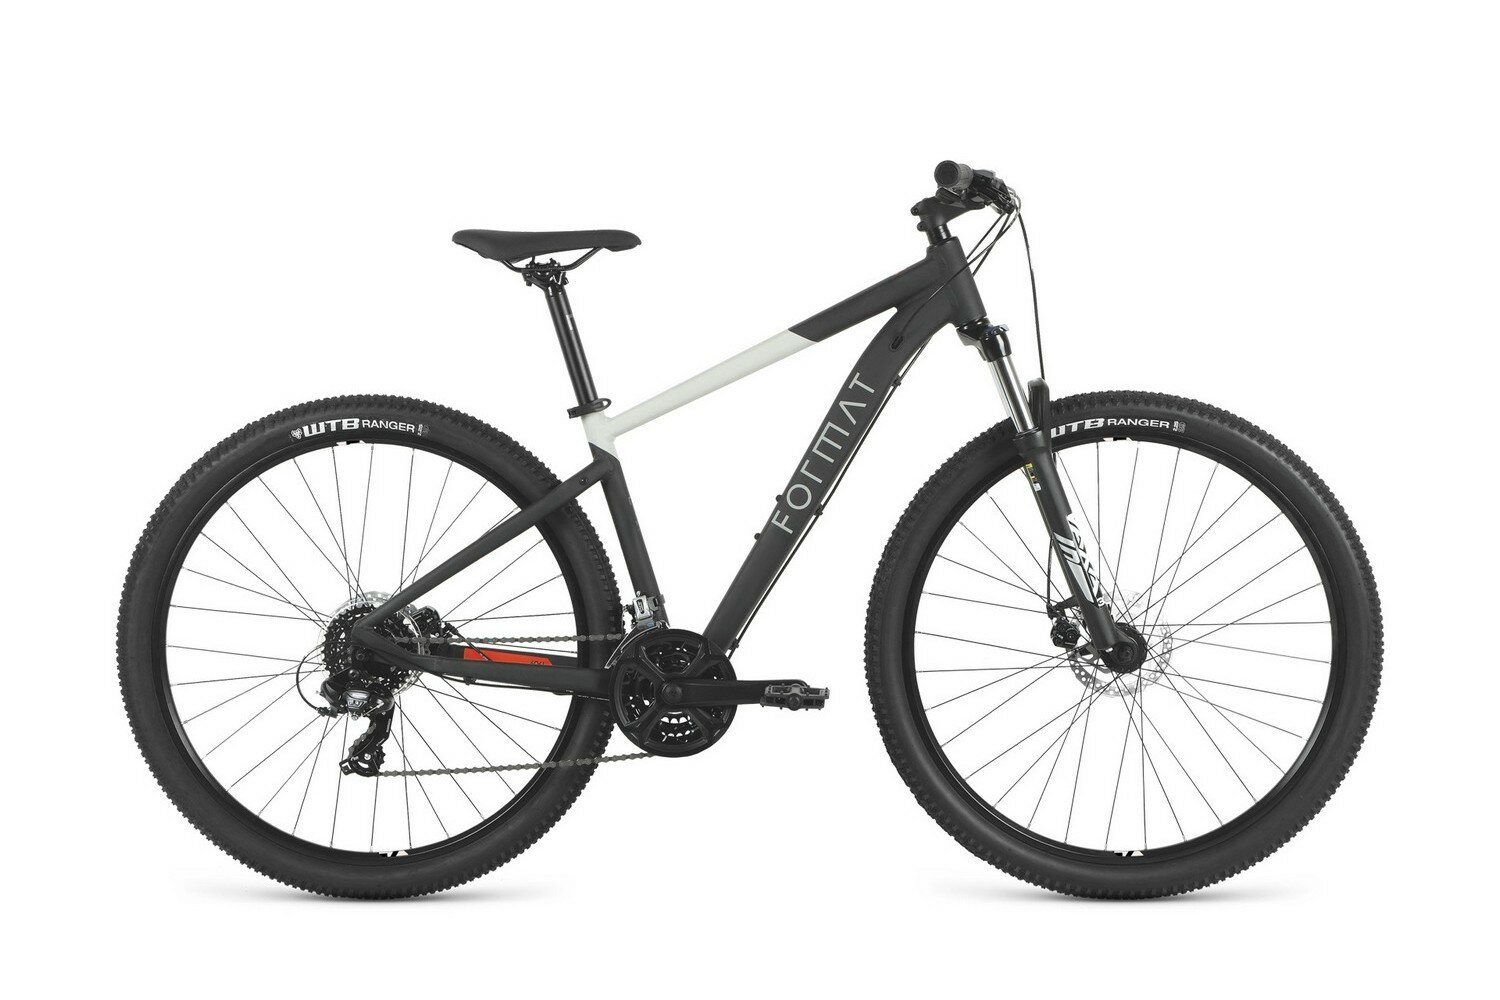 Горный велосипед Format 1415 27.5, год 2023, цвет Черный-Серебристый, ростовка 15